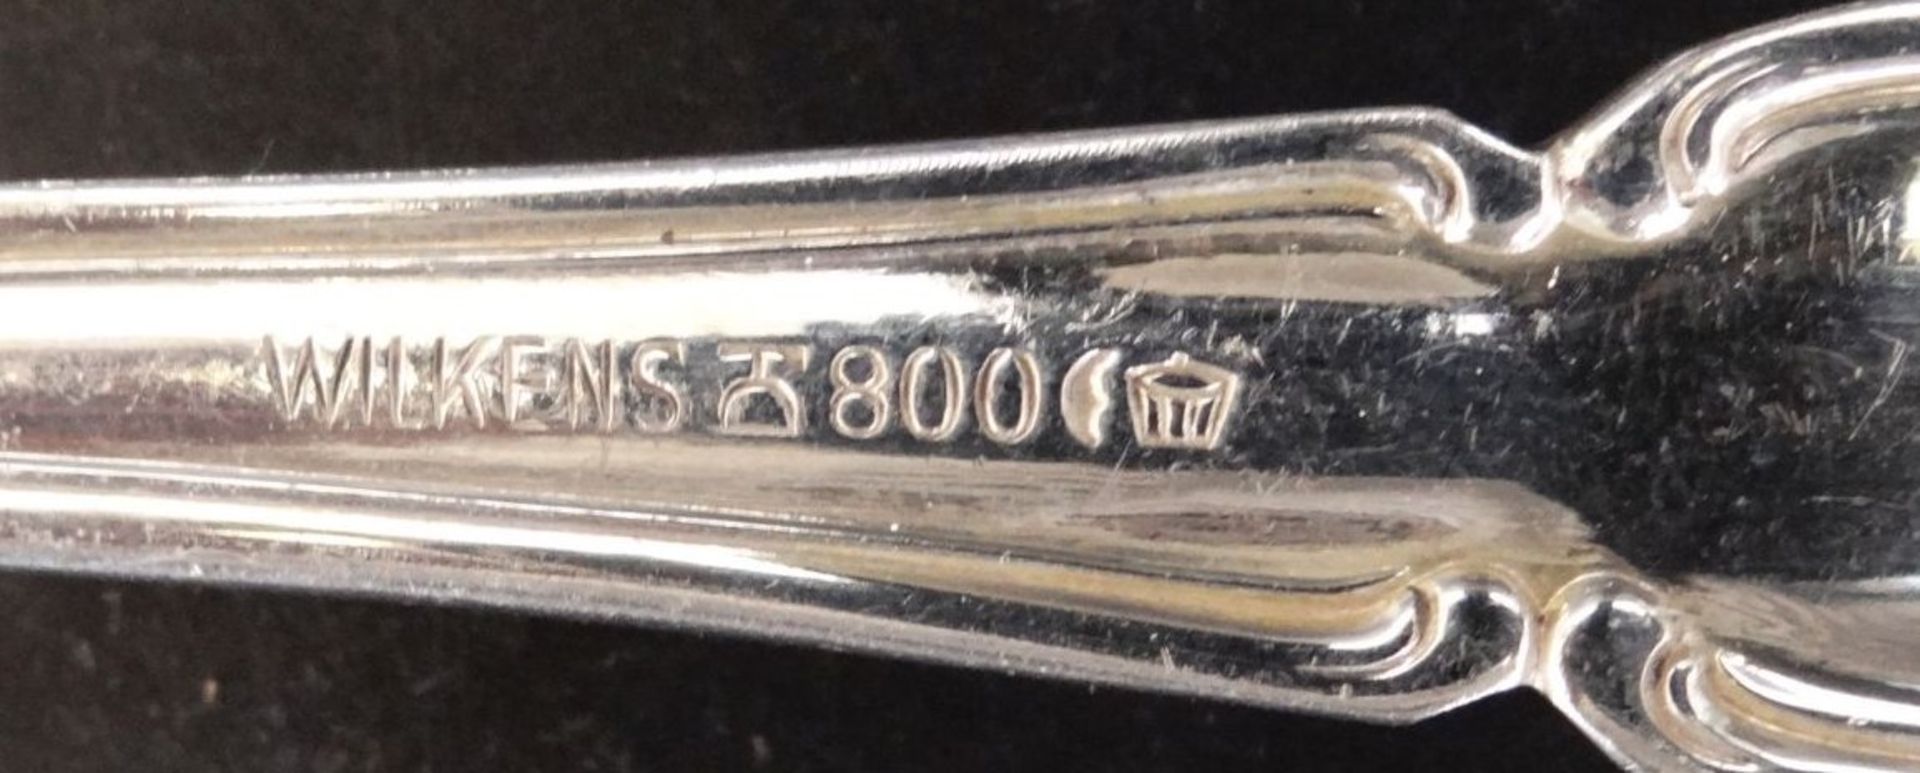 7 Vorlegeteile "Wilkens" Silber-800-. L-max. 21 cm, 303 gr. - Image 2 of 2